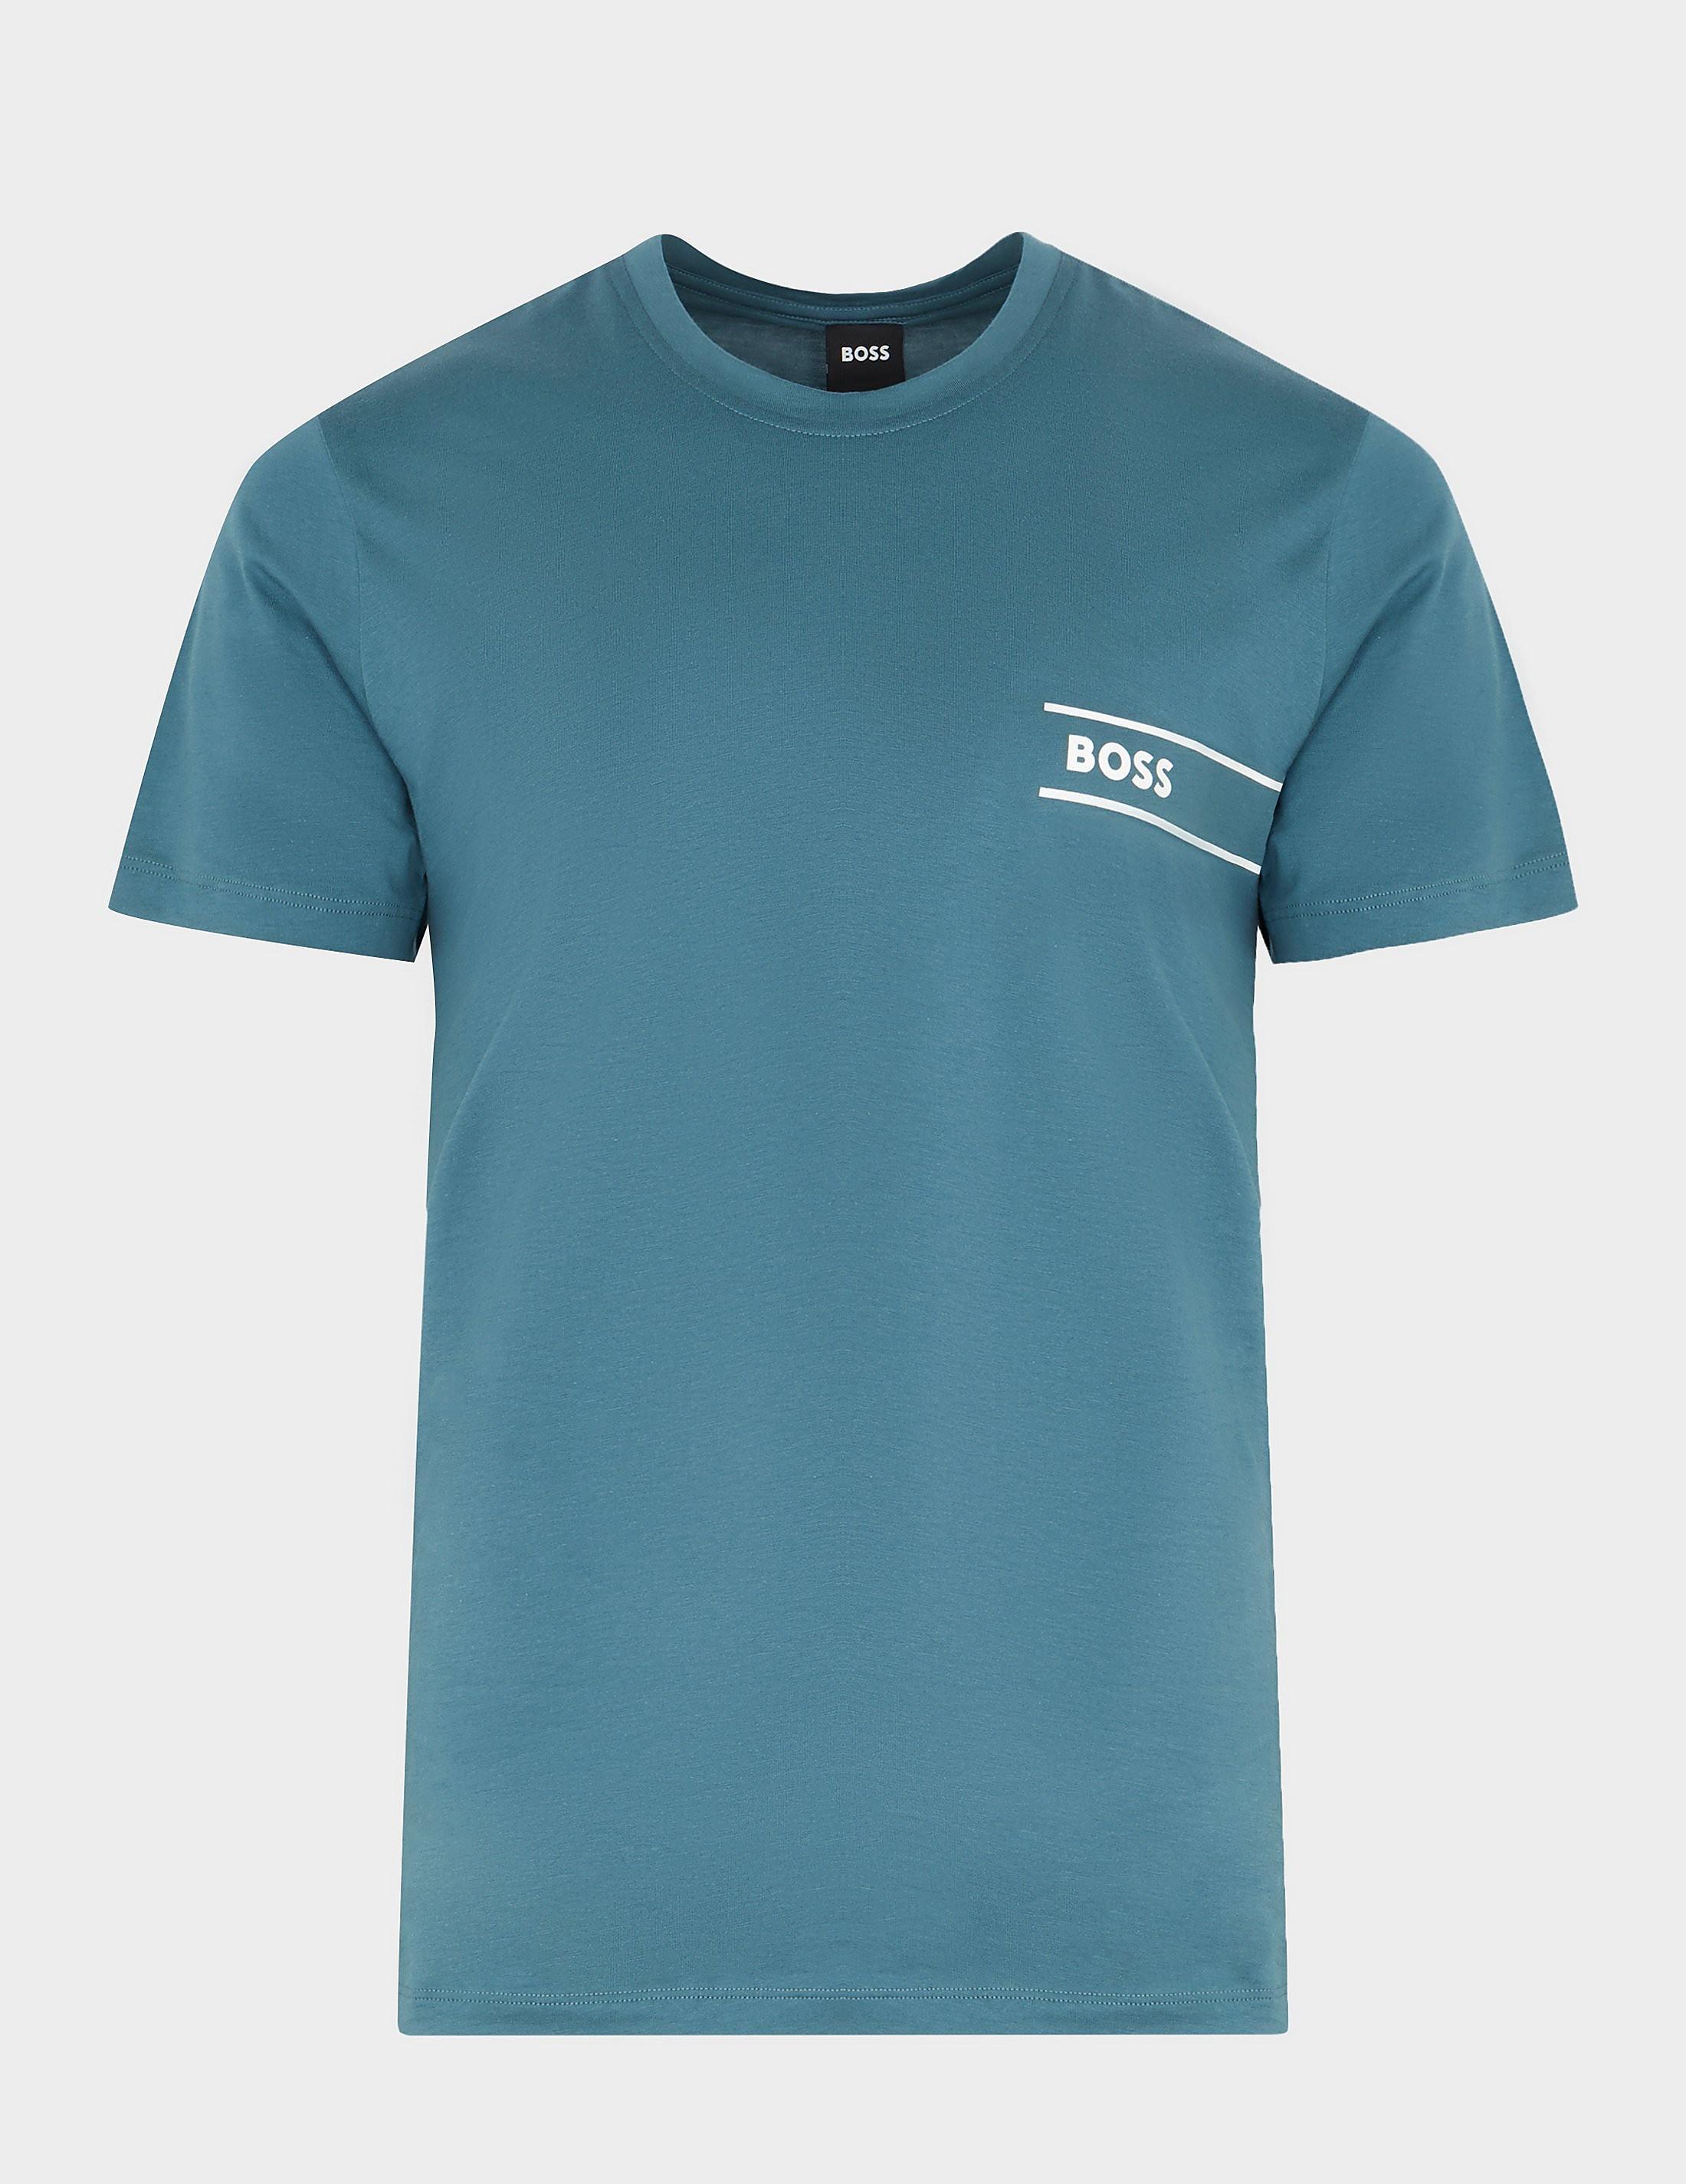 BOSS by HUGO BOSS Rn24 T-shirt in Blue for Men | Lyst